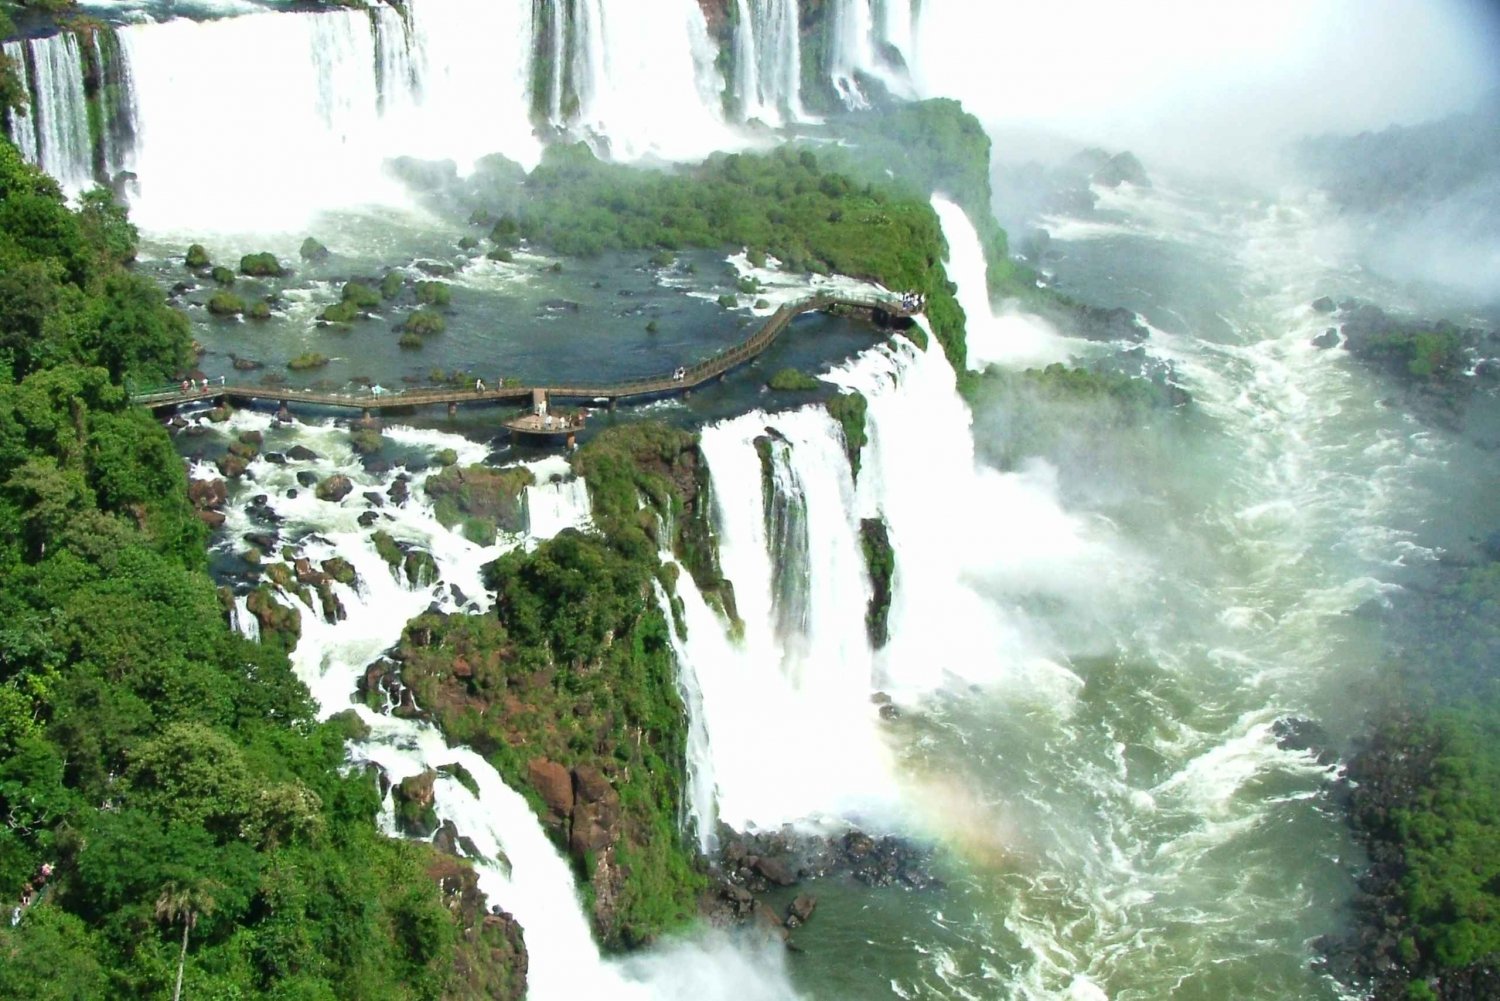 Privé - Een prachtige dag bij de watervallen van Iguassu, Argentijnse kant